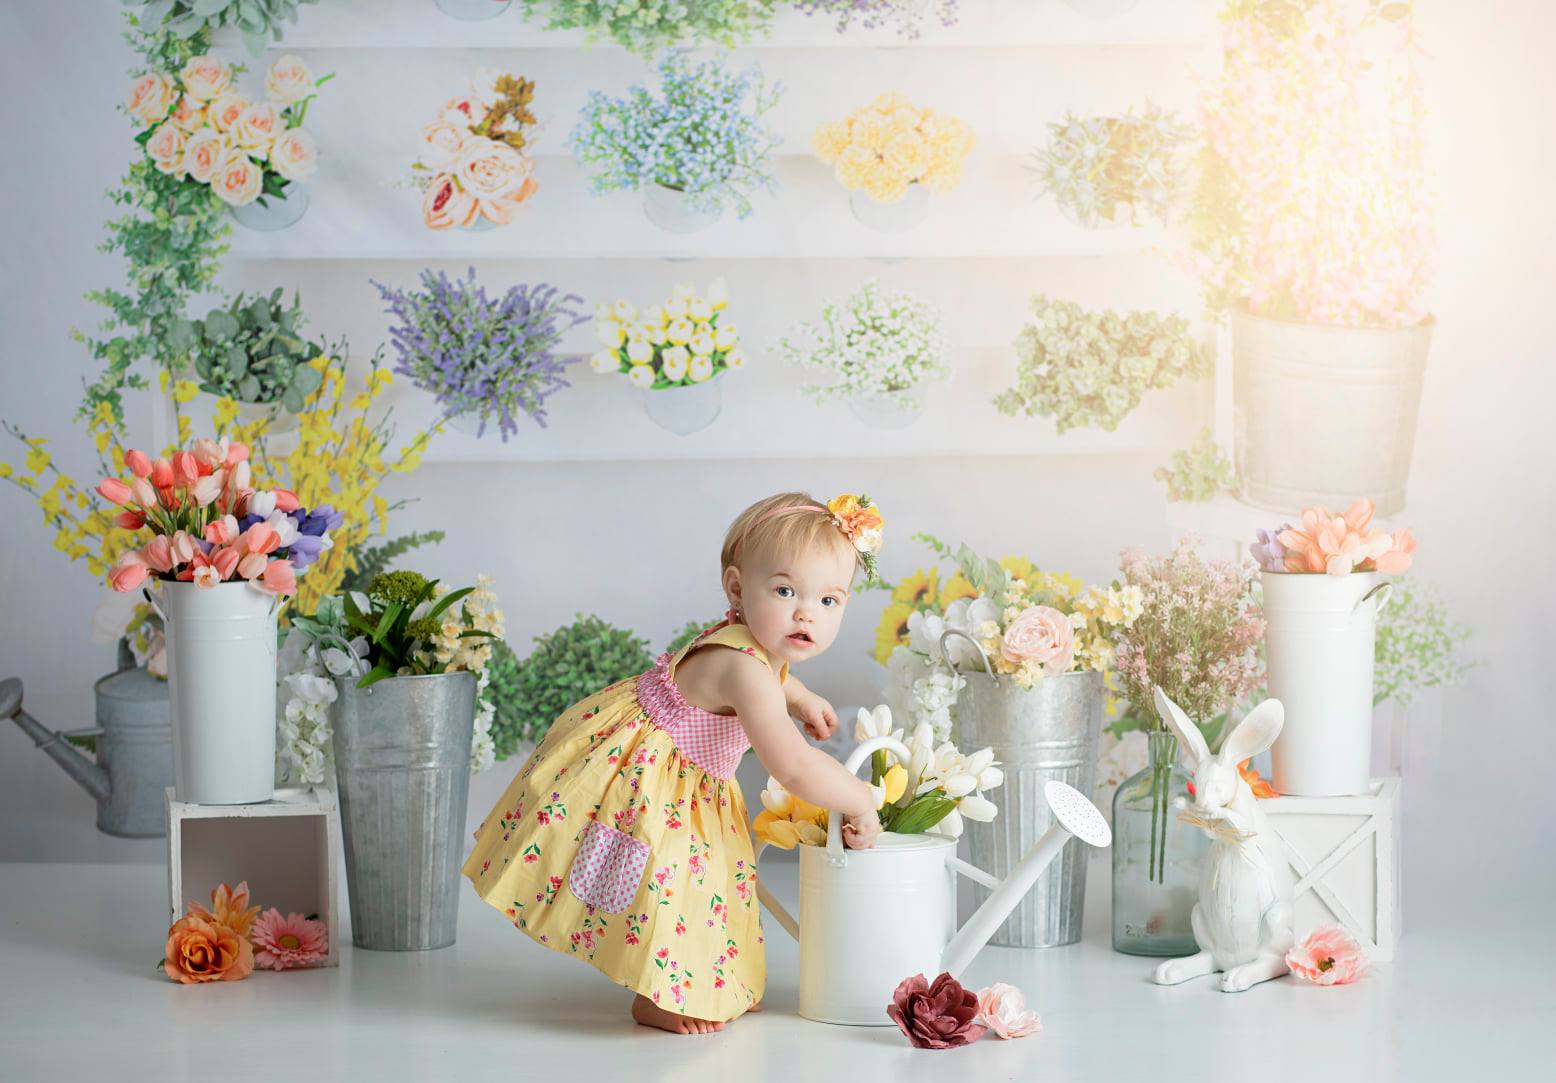 Kate Tienda de flores Fondo de primavera diseñado por Moements Photography